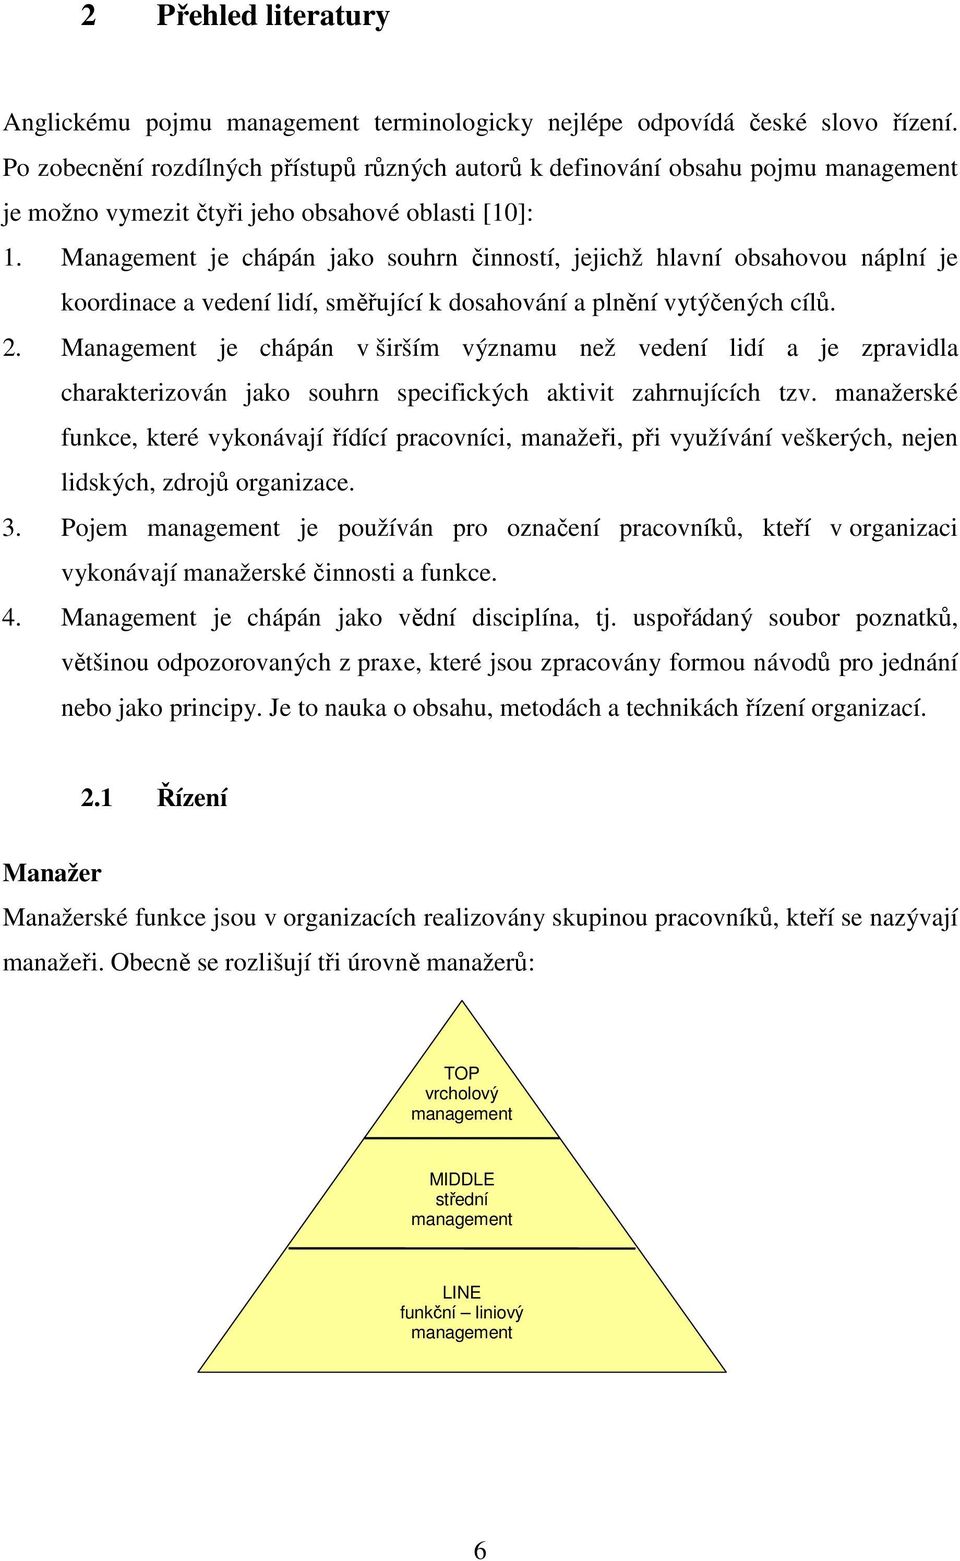 Management je chápán jako souhrn činností, jejichž hlavní obsahovou náplní je koordinace a vedení lidí, směřující k dosahování a plnění vytýčených cílů. 2.